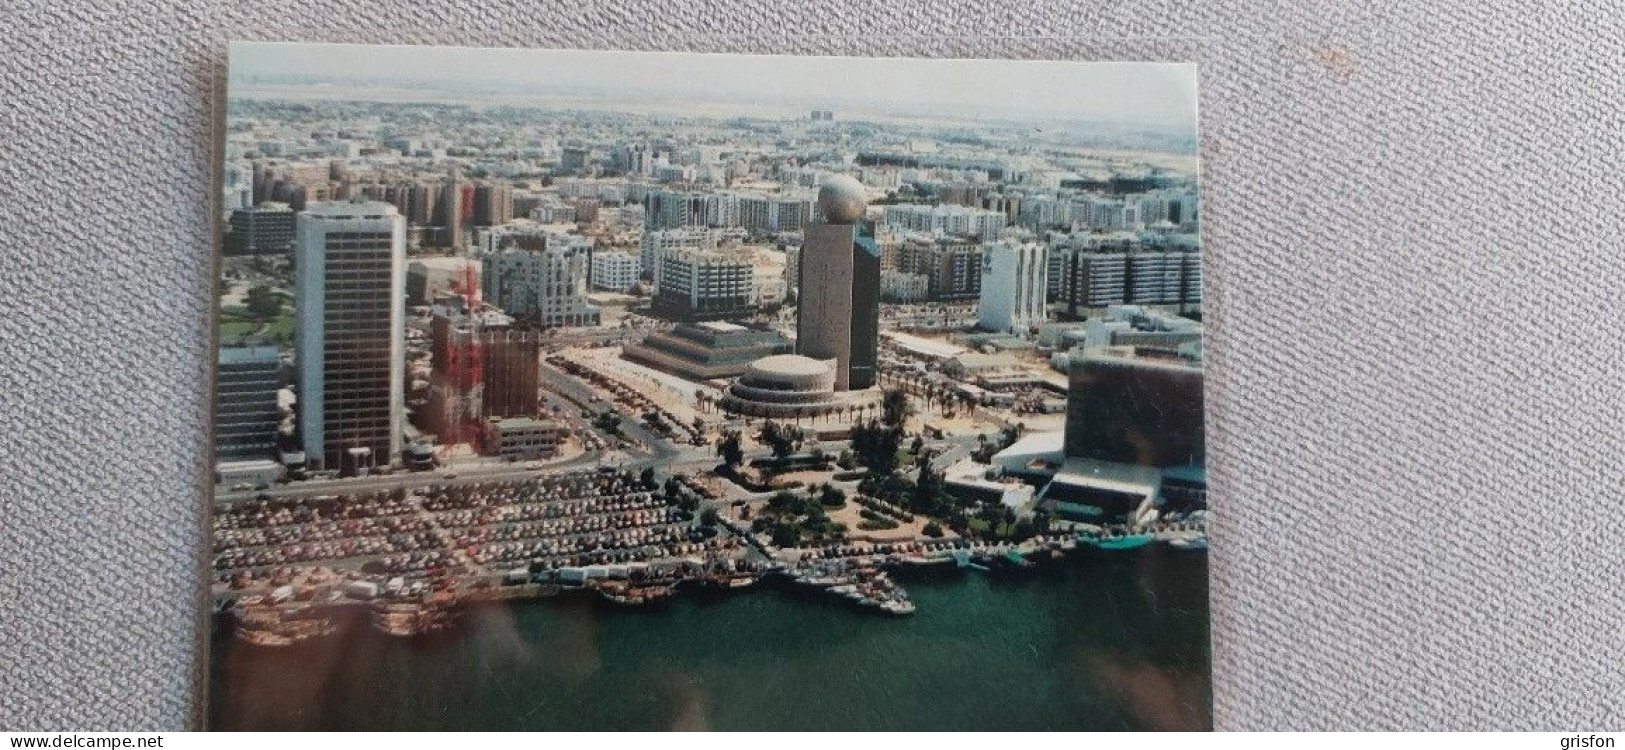 Abu Dhabi - Verenigde Arabische Emiraten